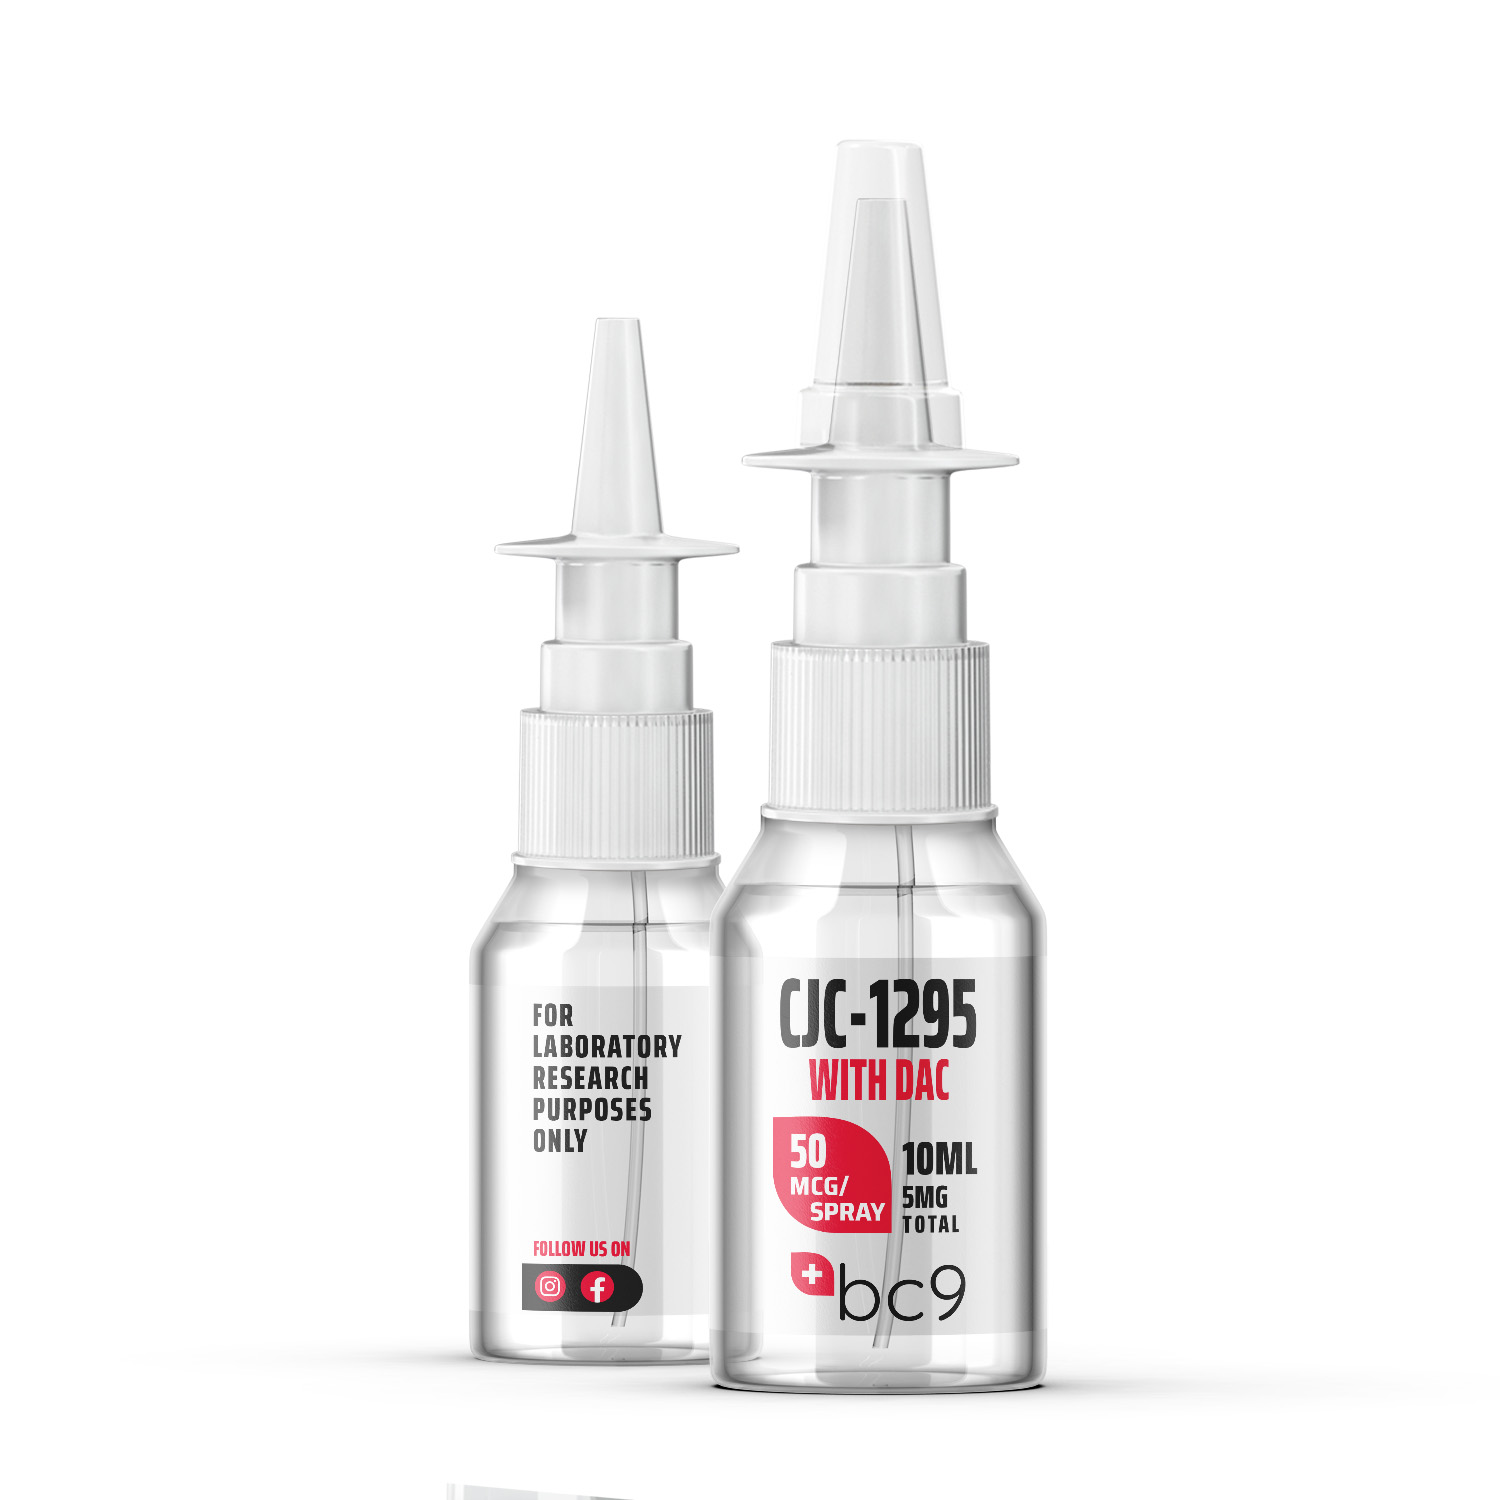 CJC-1295 With Dac Nasal Spray | BC9